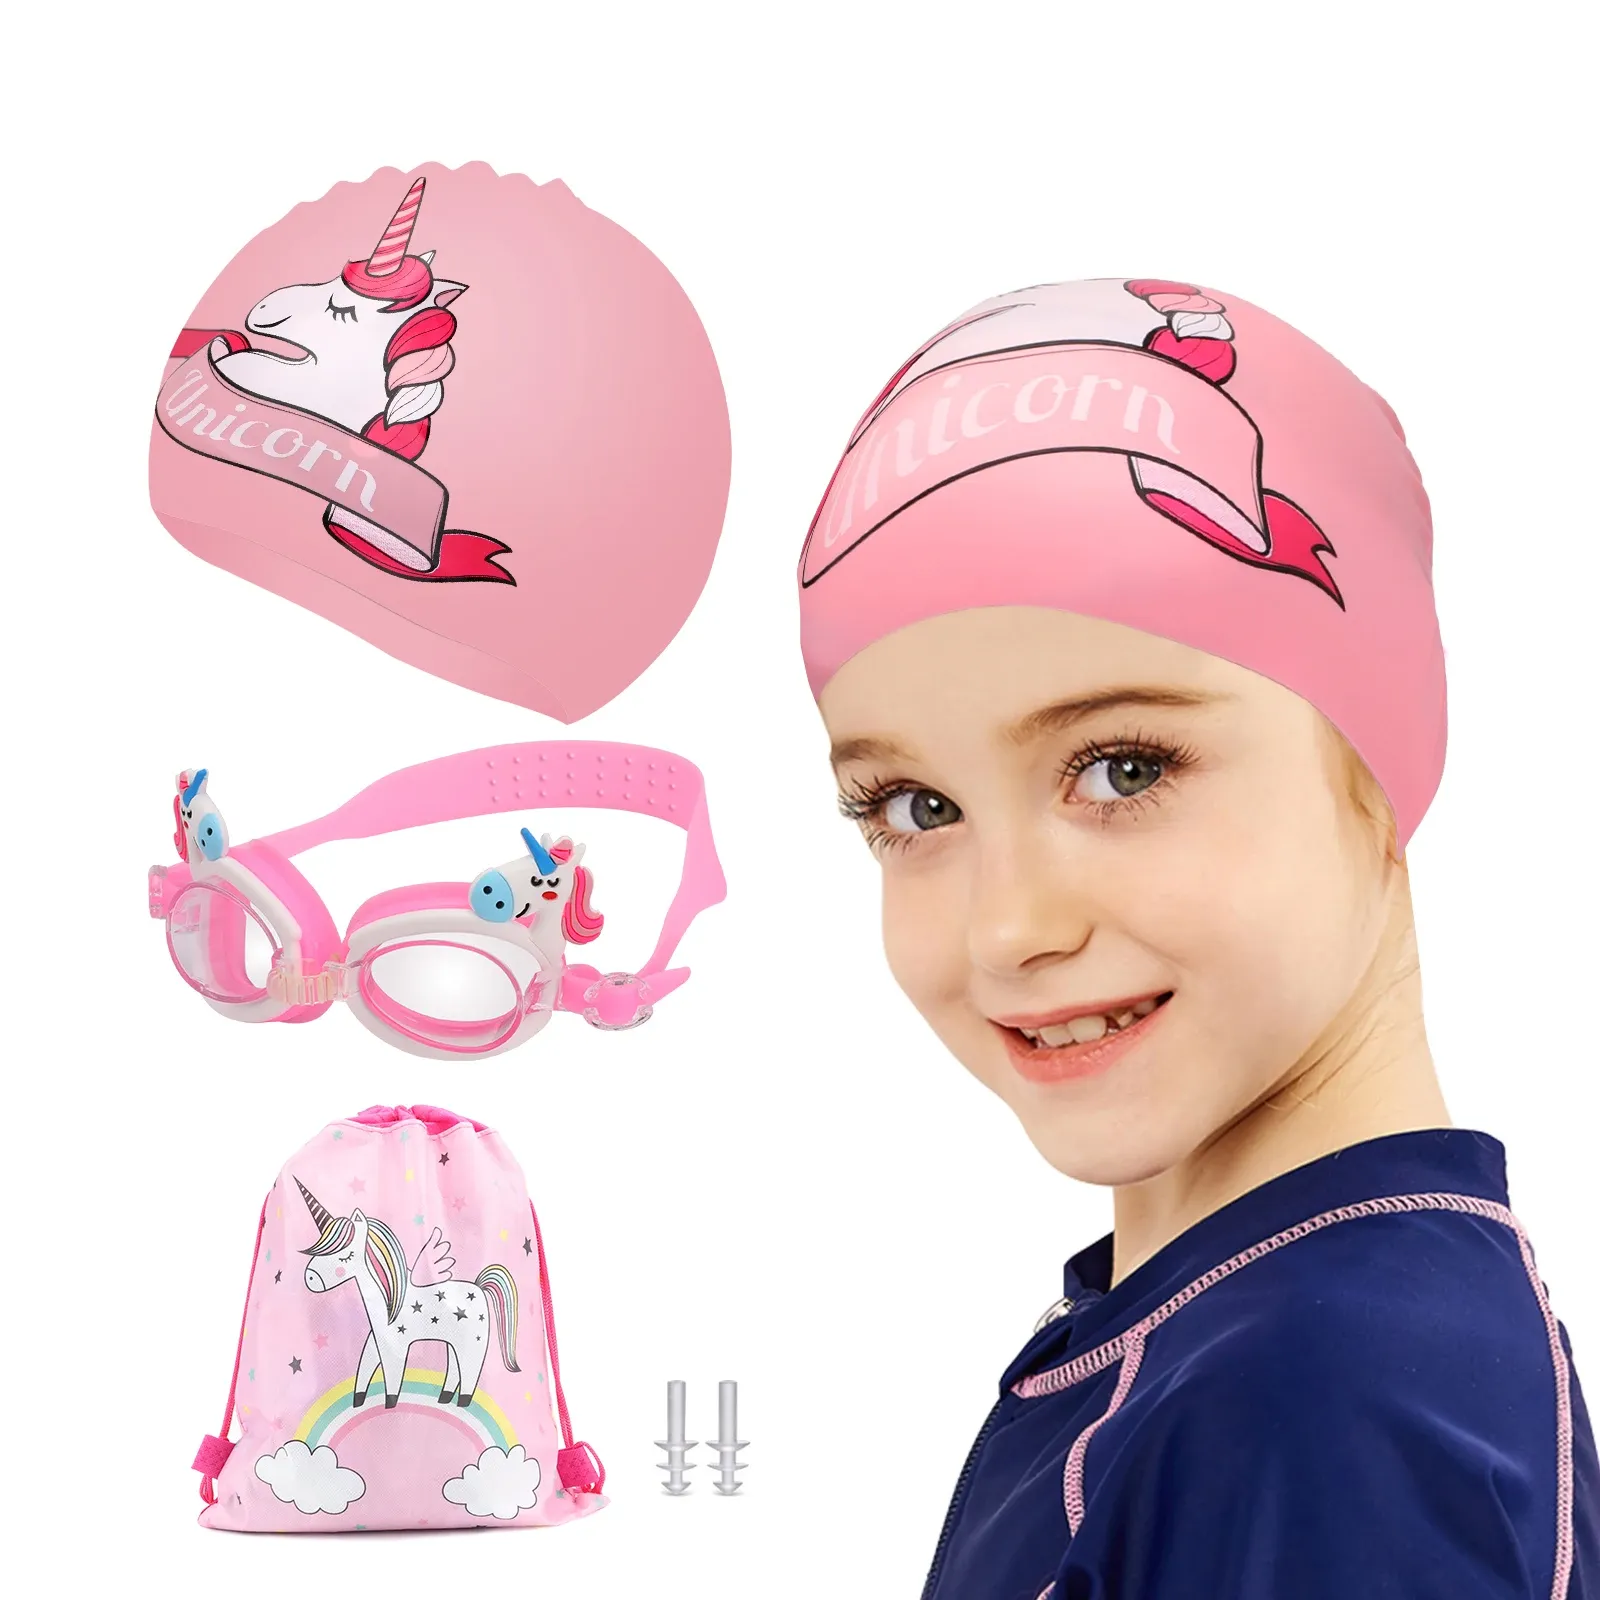 Accessoires 4 Pack Kinder Schwimmkappen für lange/kurze Haarmädchen Kleinkind Schwimmbrillen Silikon Schwimmkappe Ohrstöpsel mit Ohrstöpsel Aufbewahrungstasche